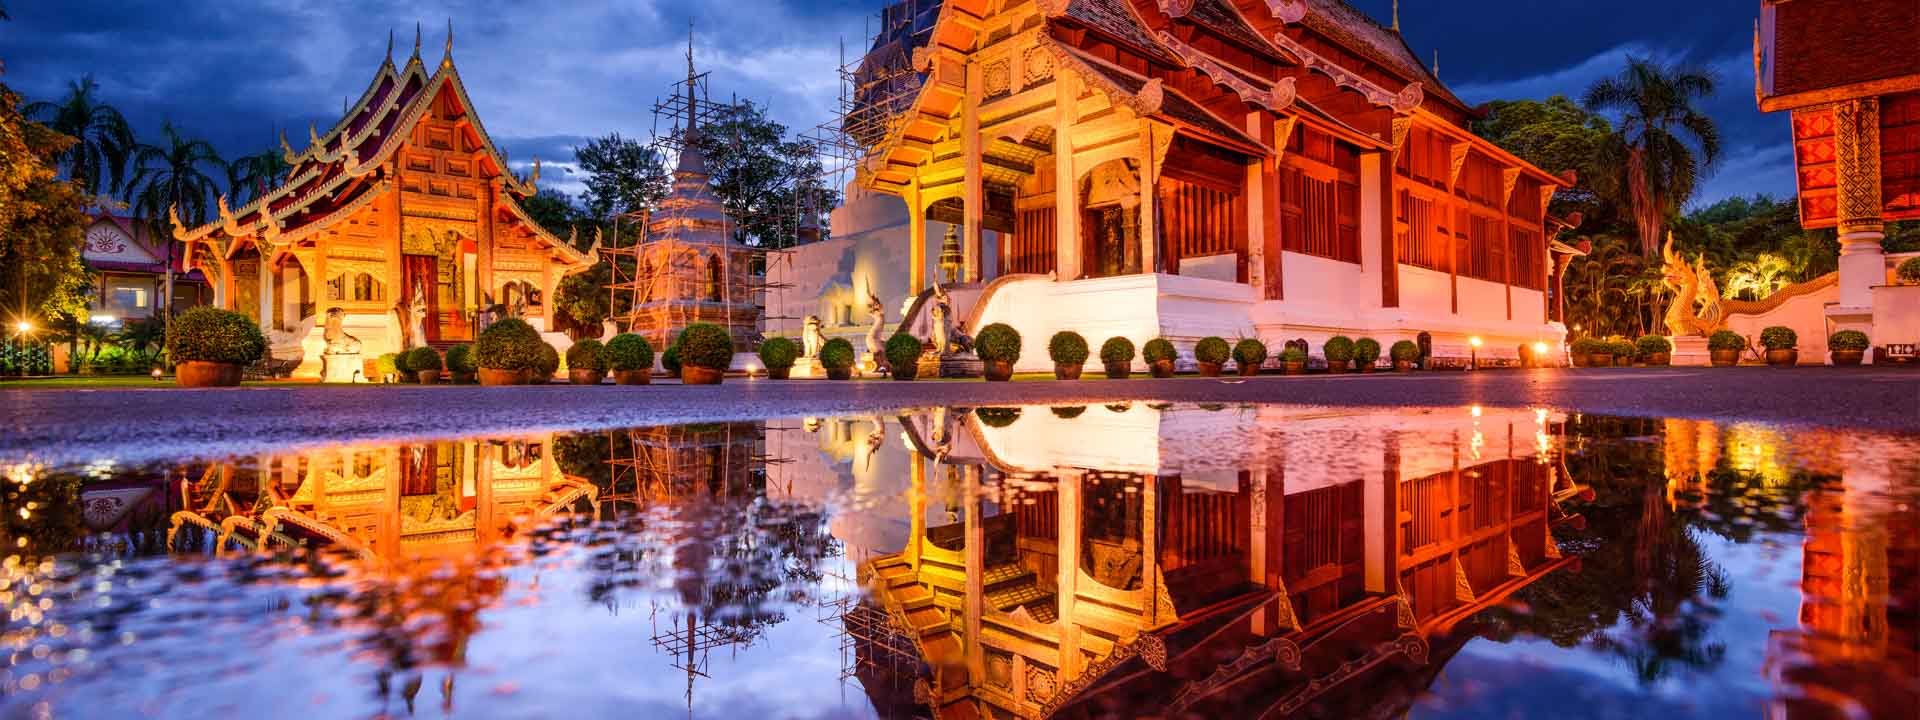 Chiang Mai- Thailand